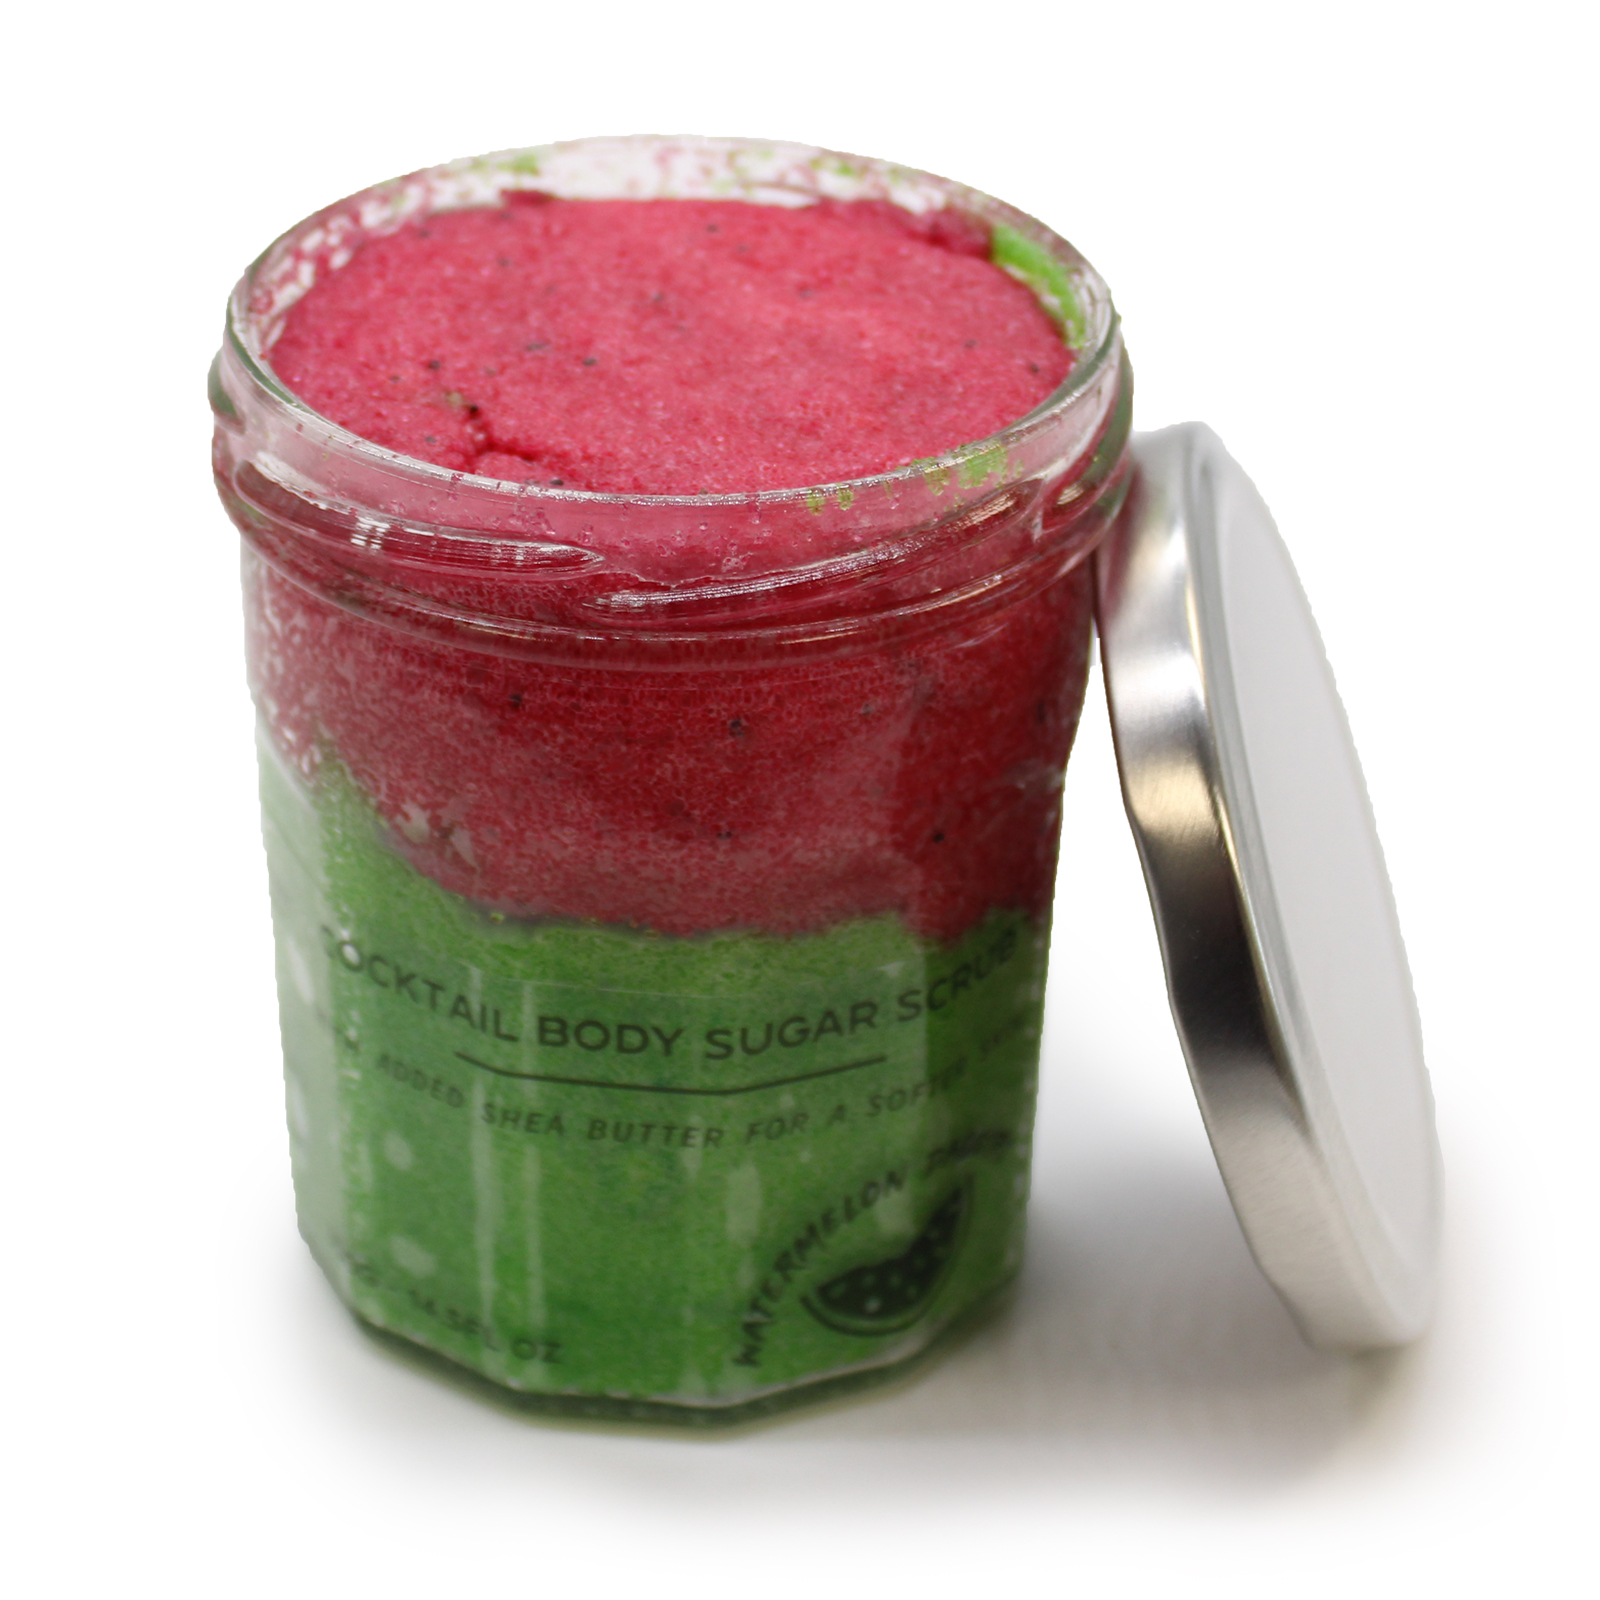 Fragranced Sugar Body Scrub - Watermelon Daquiri 300g - Click Image to Close